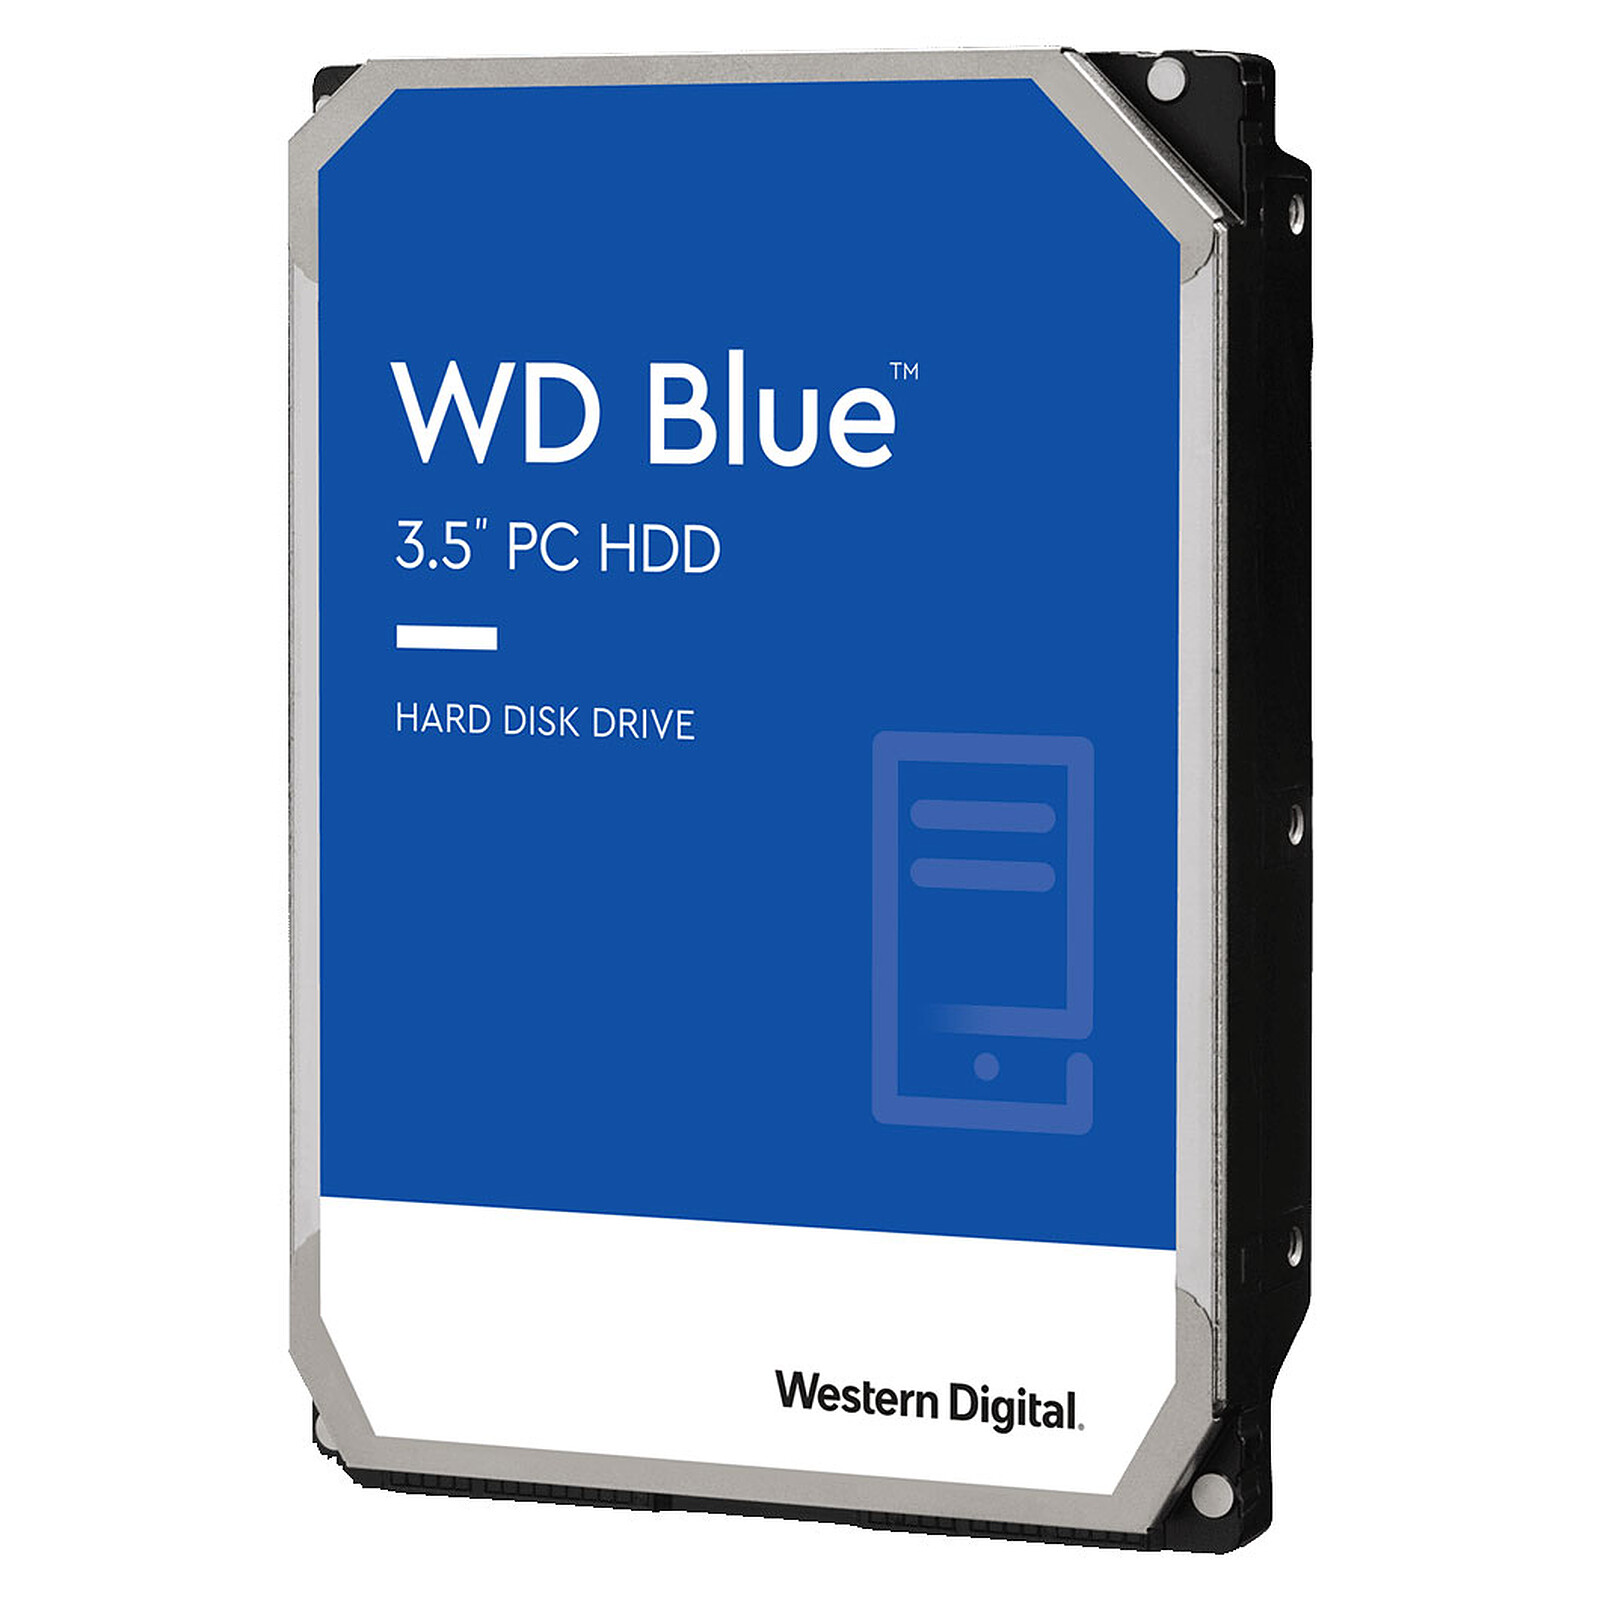 Western Digital WD Blue 2 To - Disque dur interne - Garantie 3 ans